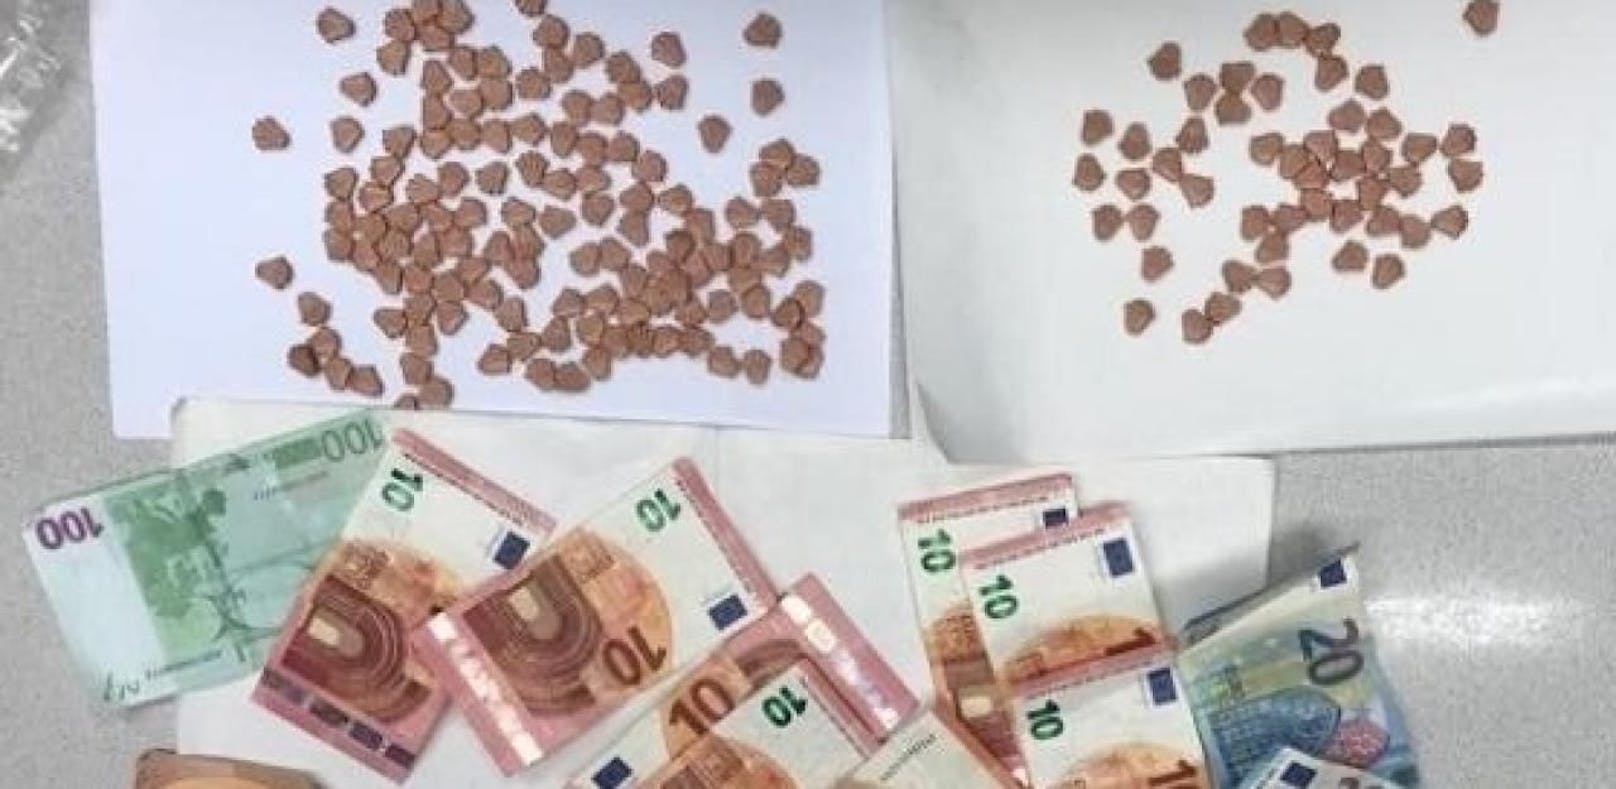 Die Wiener Polizei stellte bei einem 21-Jährigen fast 200 Ecstasy-Tabletten und Bargeld sicher. 